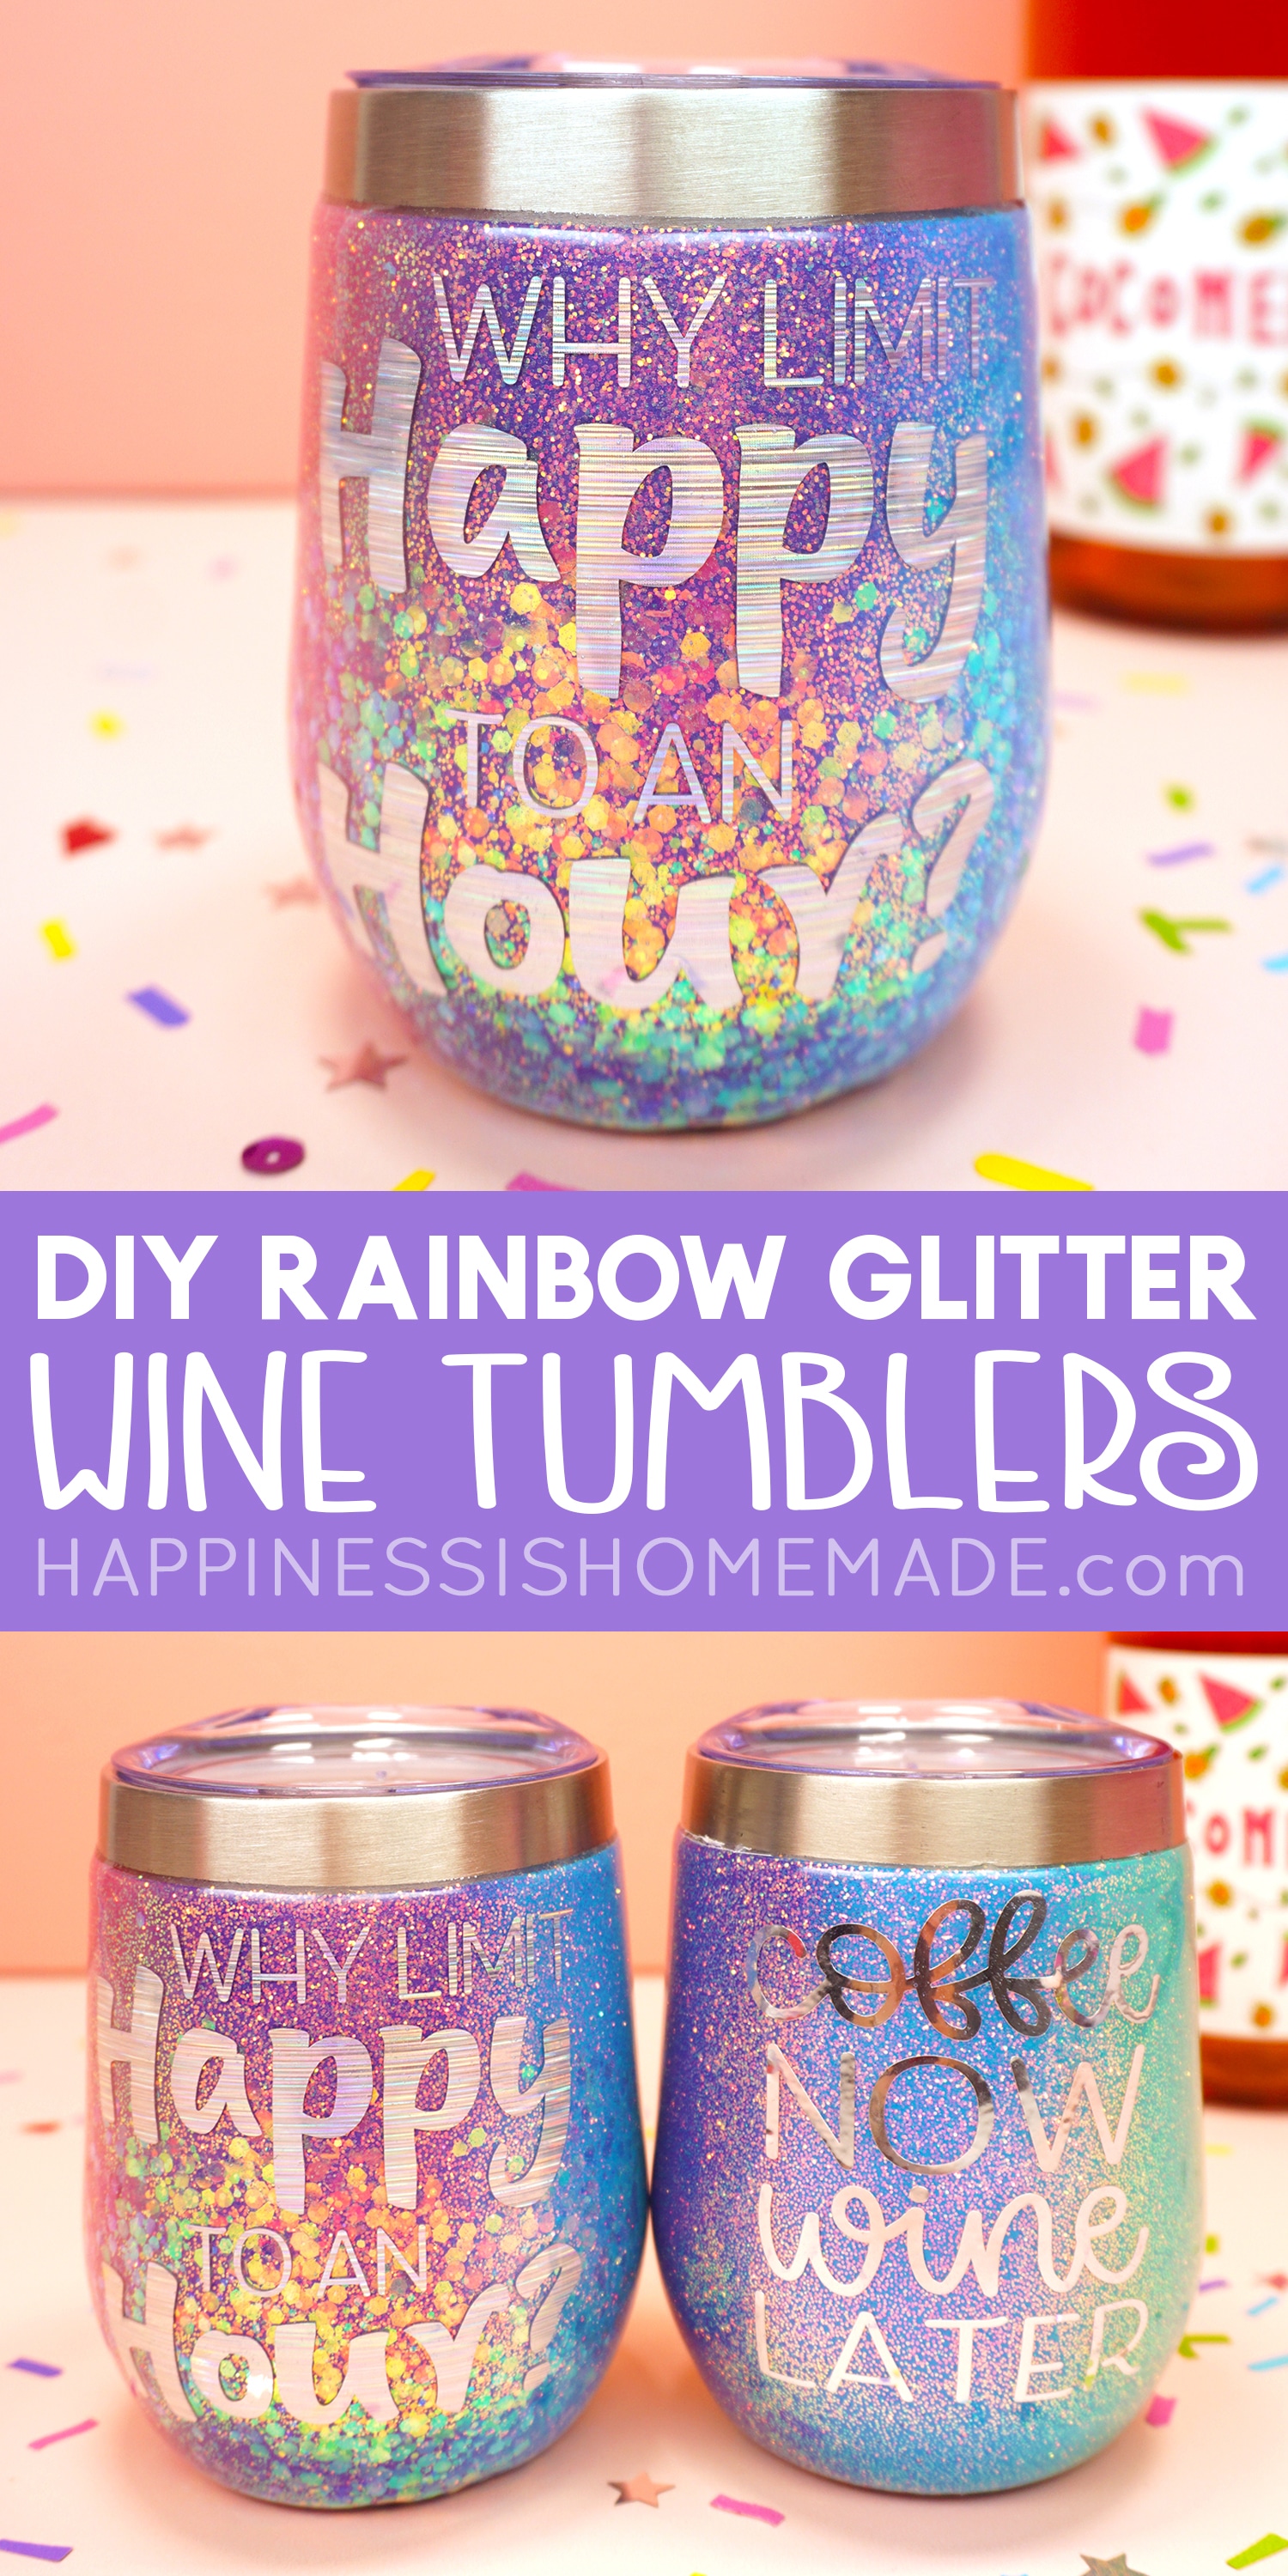 https://www.happinessishomemade.net/wp-content/uploads/2019/11/DIY-Rainbow-Glitter-Wine-Tumblers.jpg